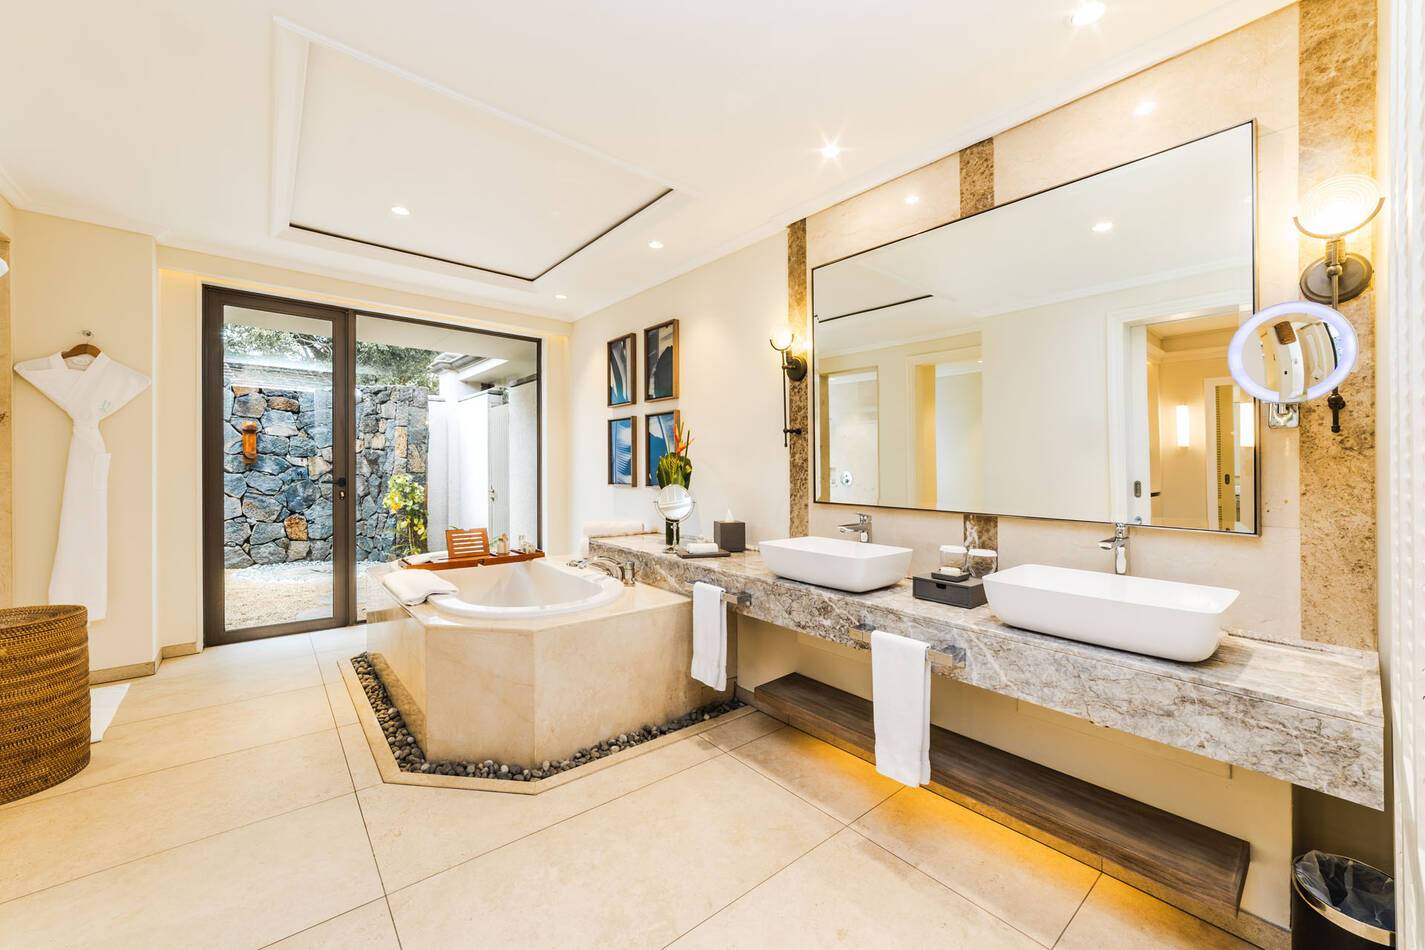 Maradiva Ile Maurice Luxury Suite pool villa bathroom